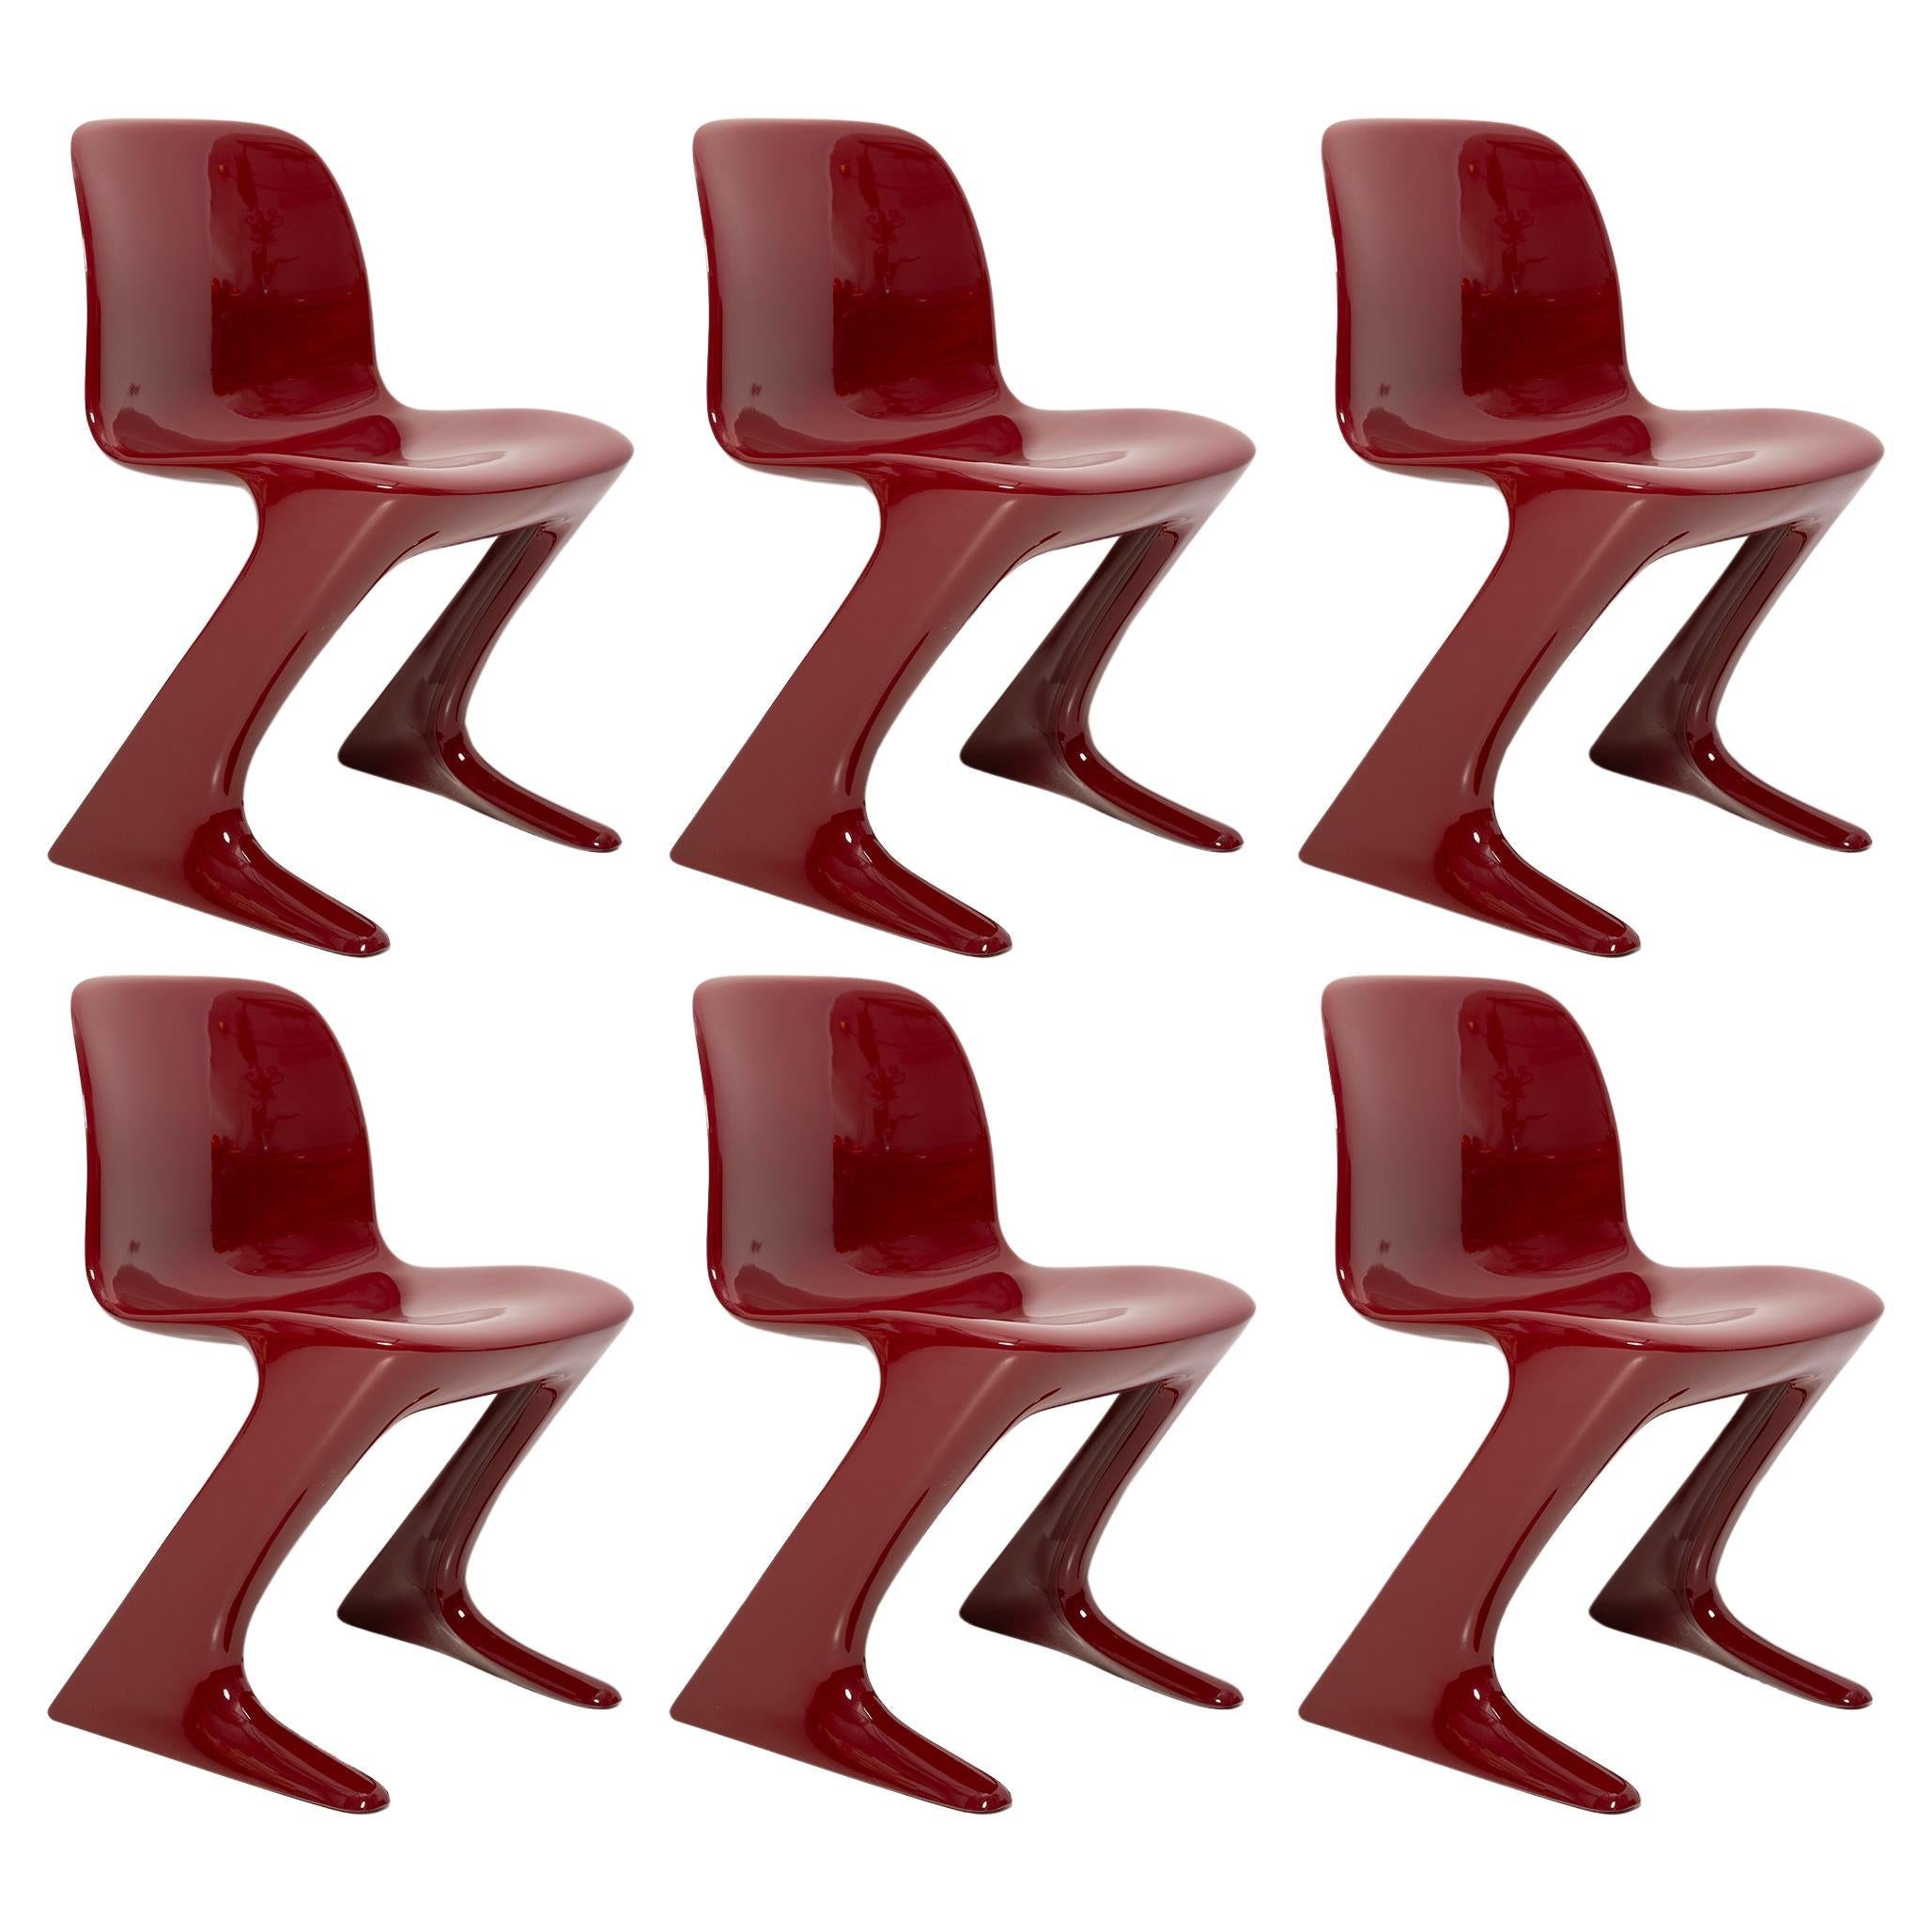 Ensemble de six chaises Kangourouo rouge foncé conçues par Ernst Moeckl, Allemagne, 1968